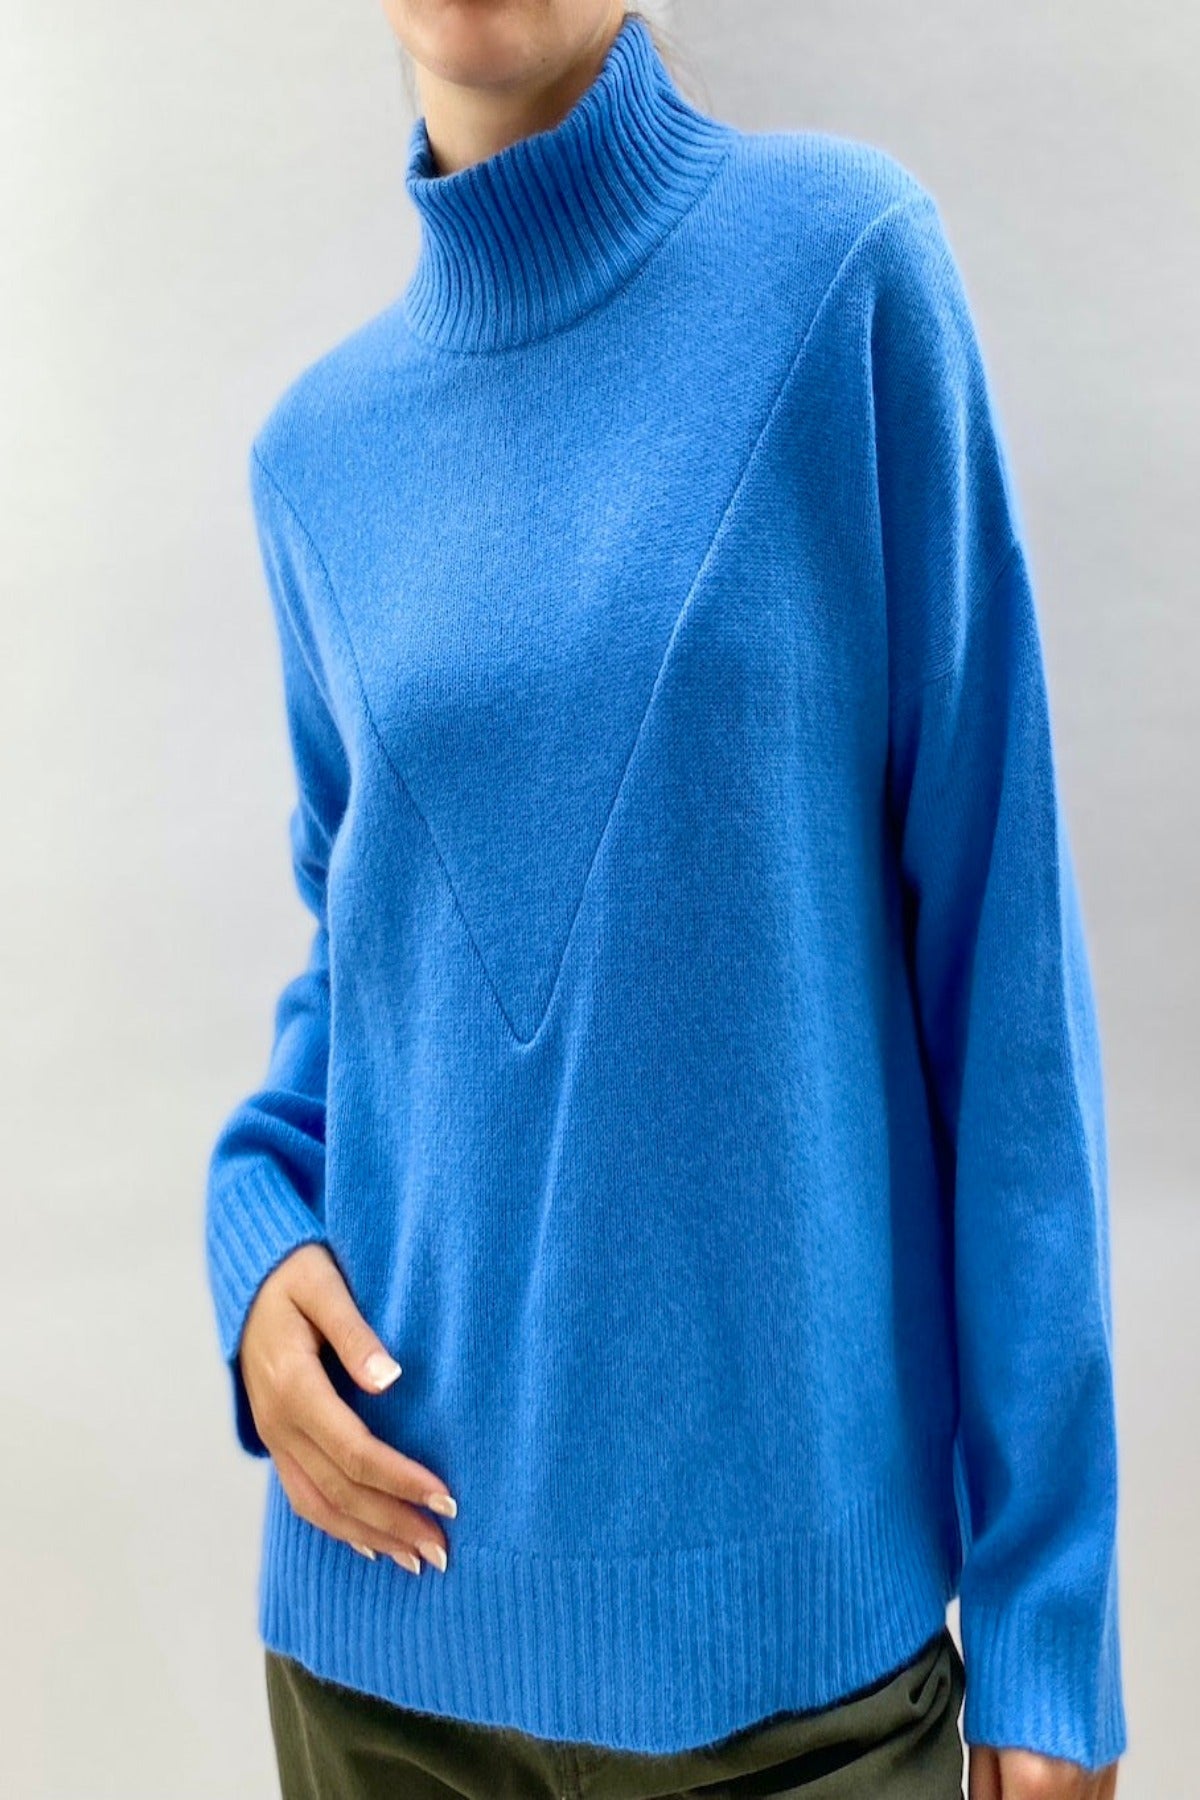 zelda cornflower high neck sweater 2